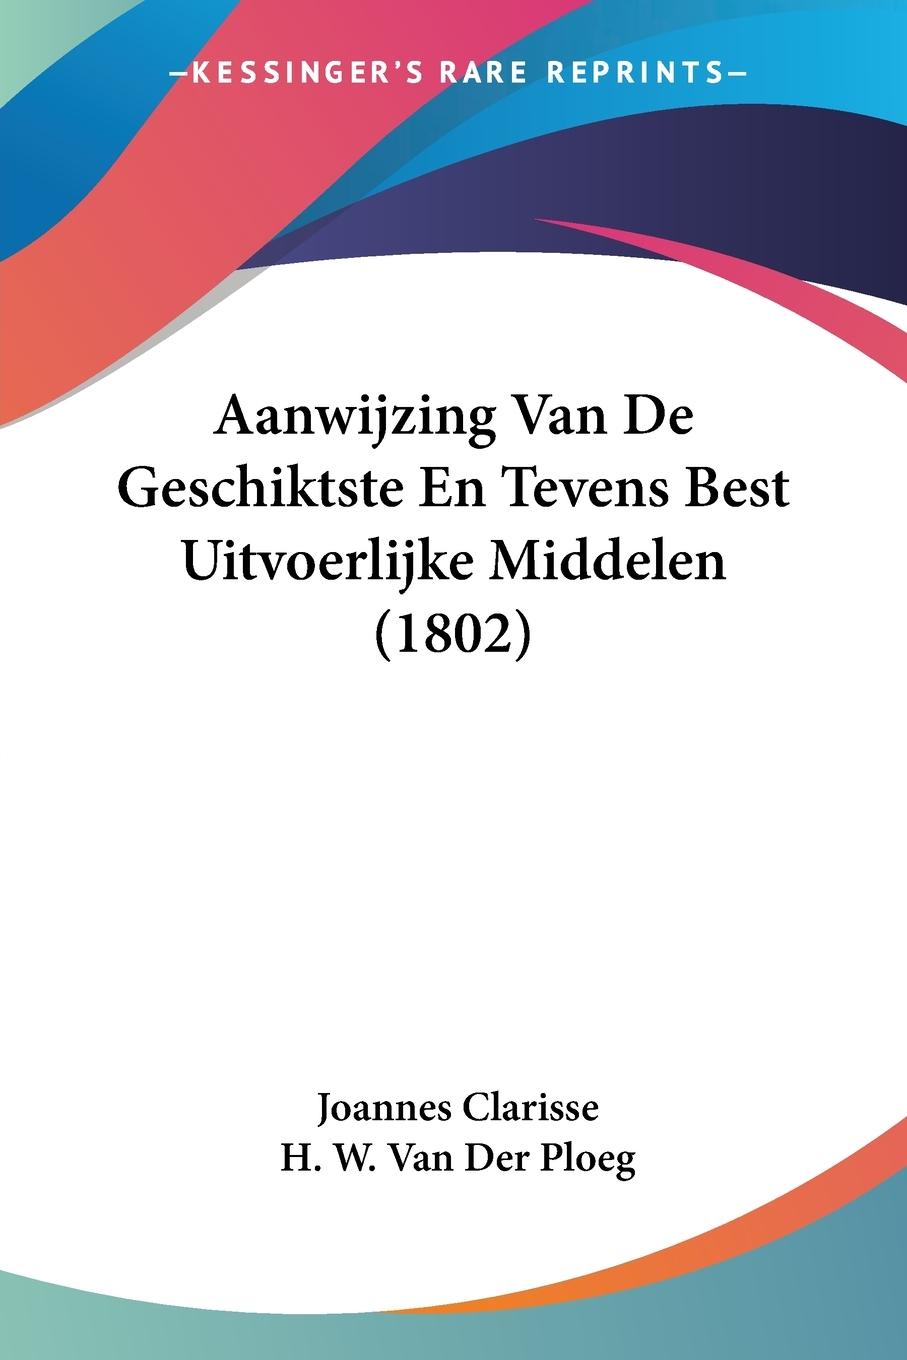 Aanwijzing Van De Geschiktste En Tevens Best Uitvoerlijke Middelen (1802) - Clarisse, Joannes Ploeg, H. W. van der